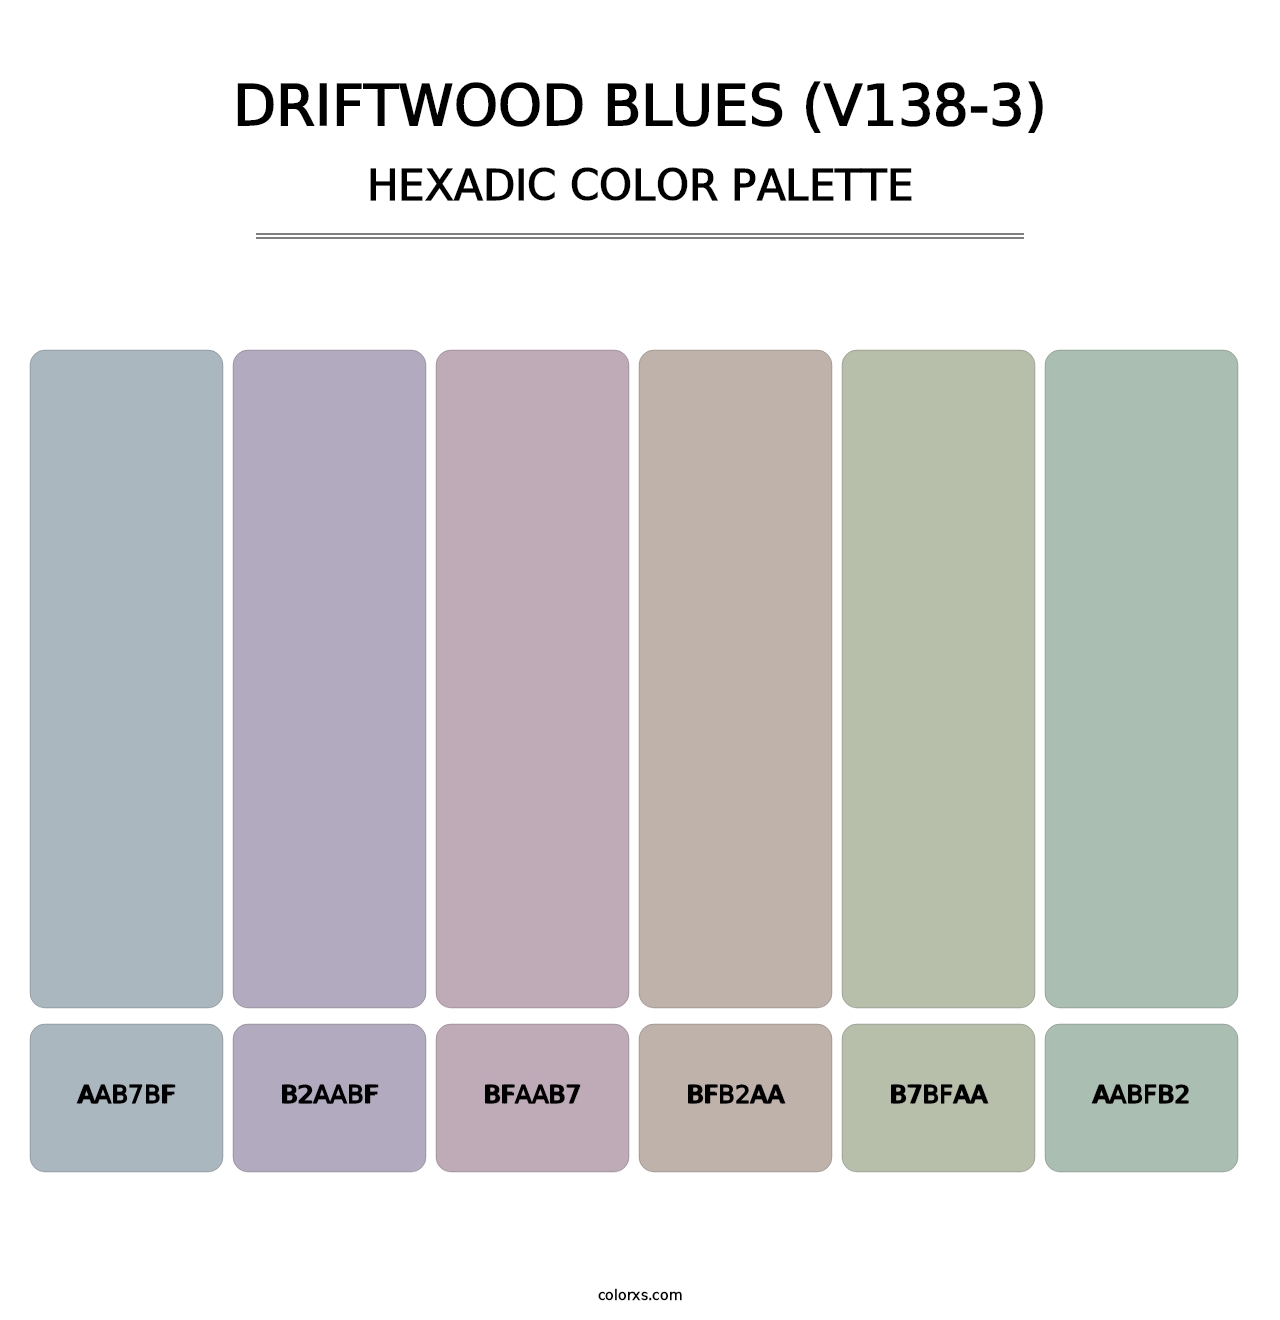 Driftwood Blues (V138-3) - Hexadic Color Palette